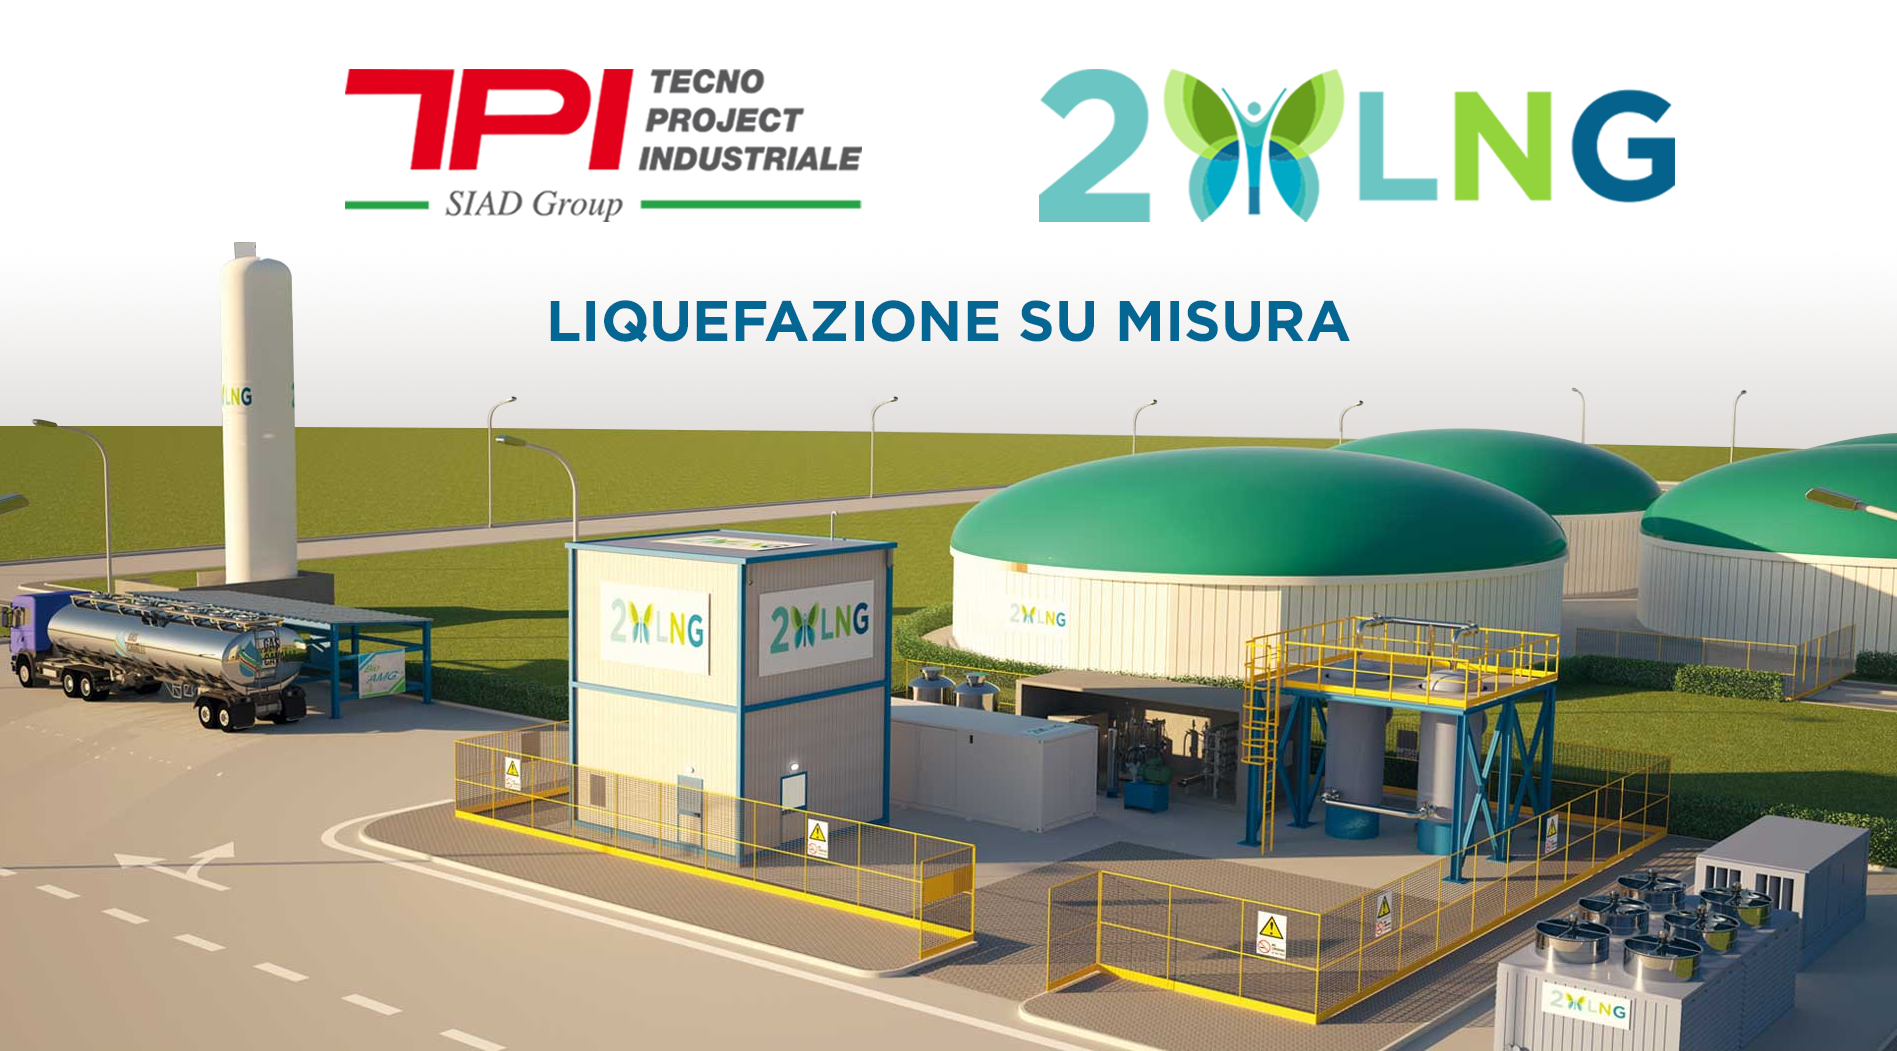 Tecno Project Industriale con 2LNG per liquefazione bioGNL